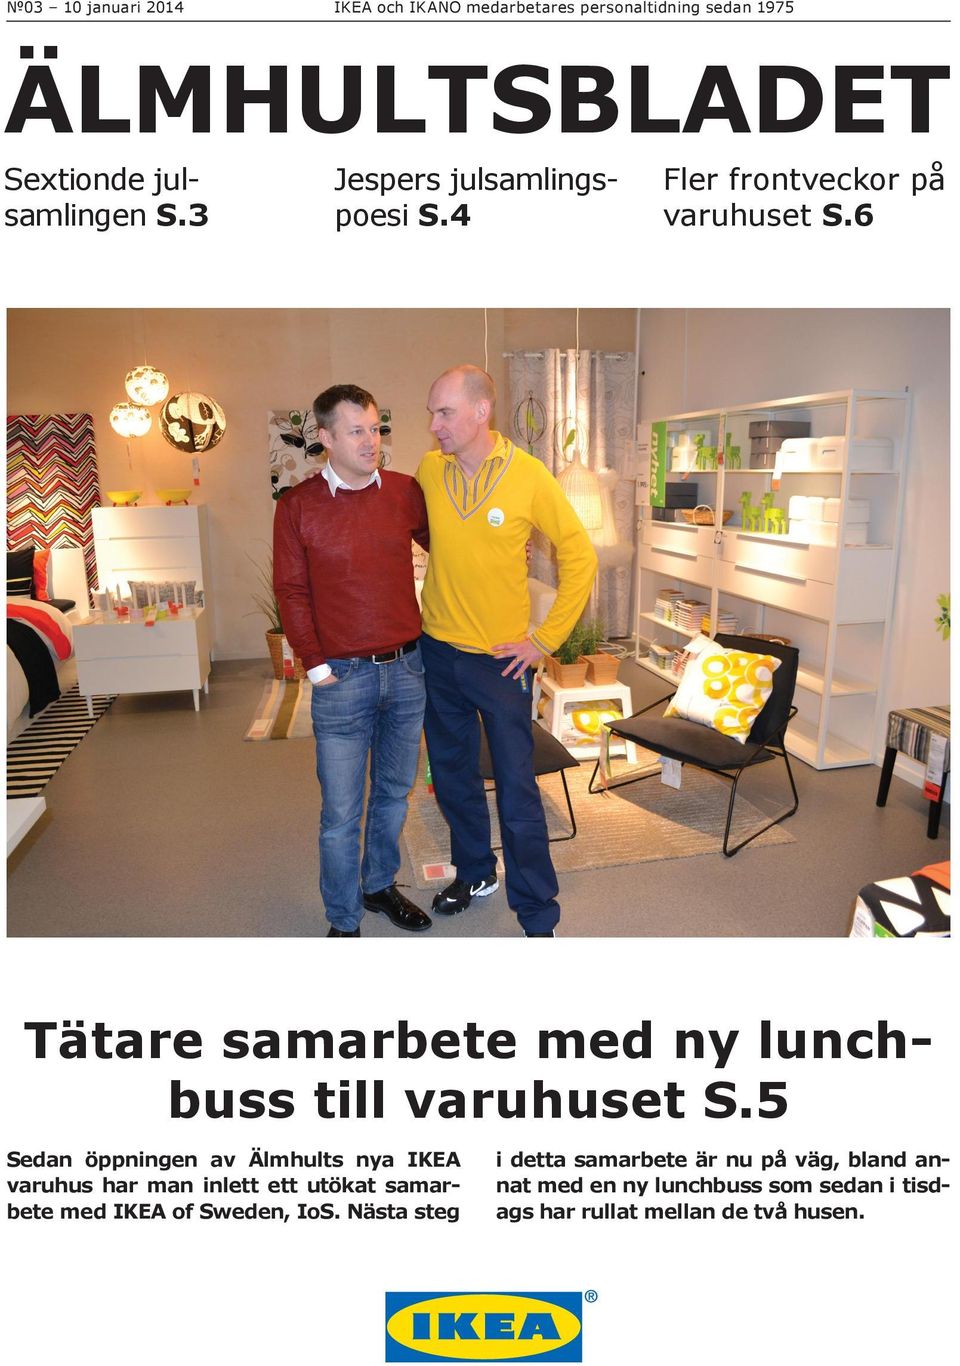 5 Sedan öppningen av Älmhults nya IKEA varuhus har man inlett ett utökat samarbete med IKEA of Sweden, IoS.